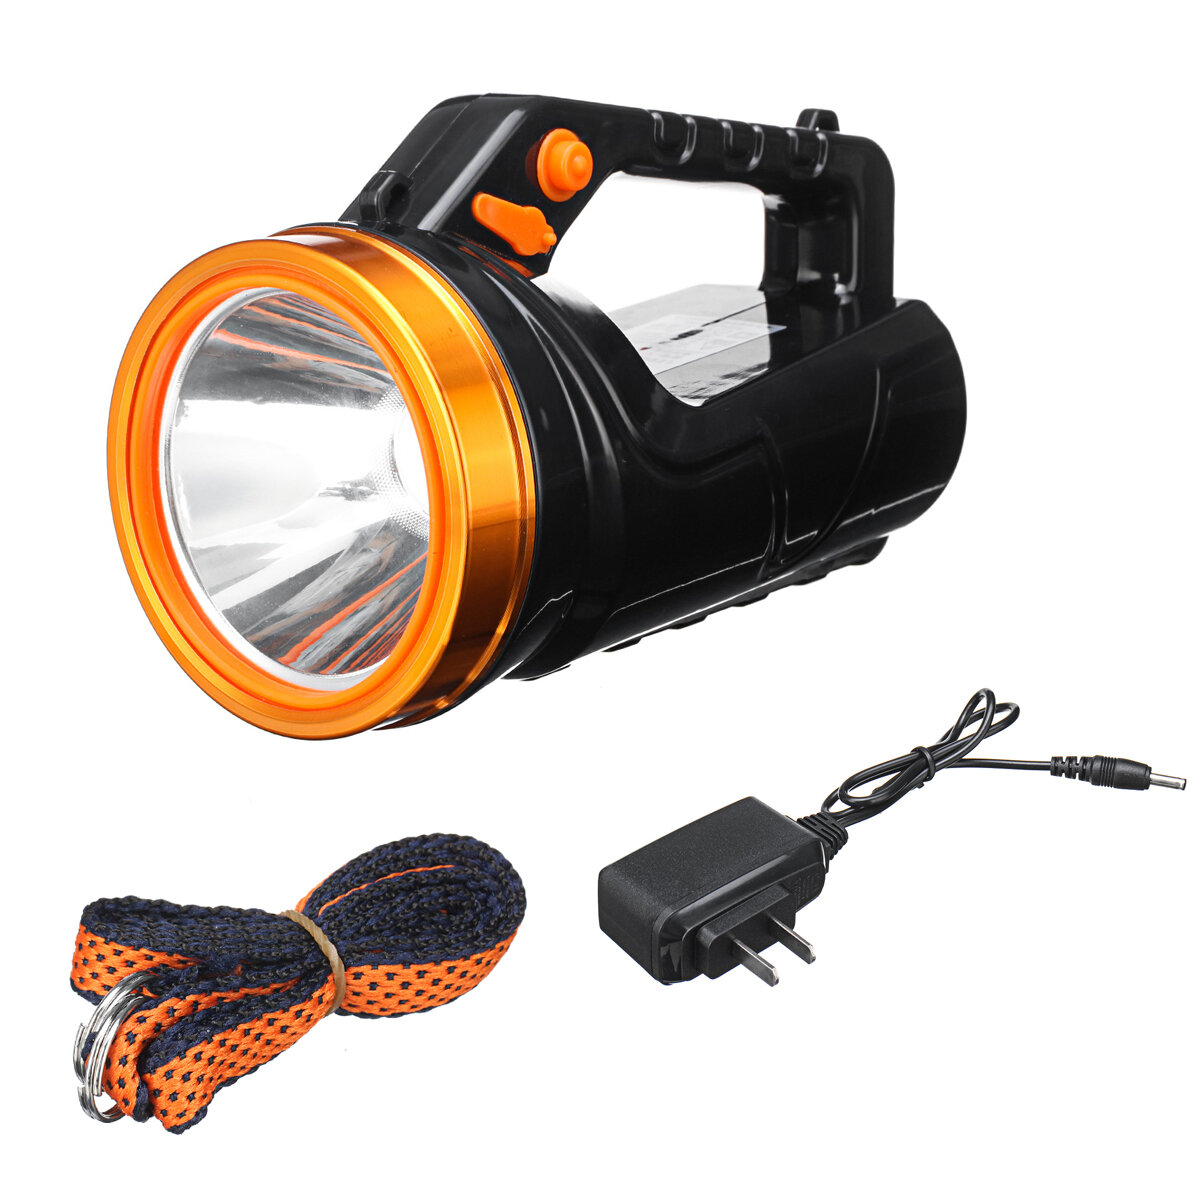 

4,2 В 520 мА Супер Яркий прожектор LED Прожектор USB 2 режима 500 м Фонарик Рыбалка Охота